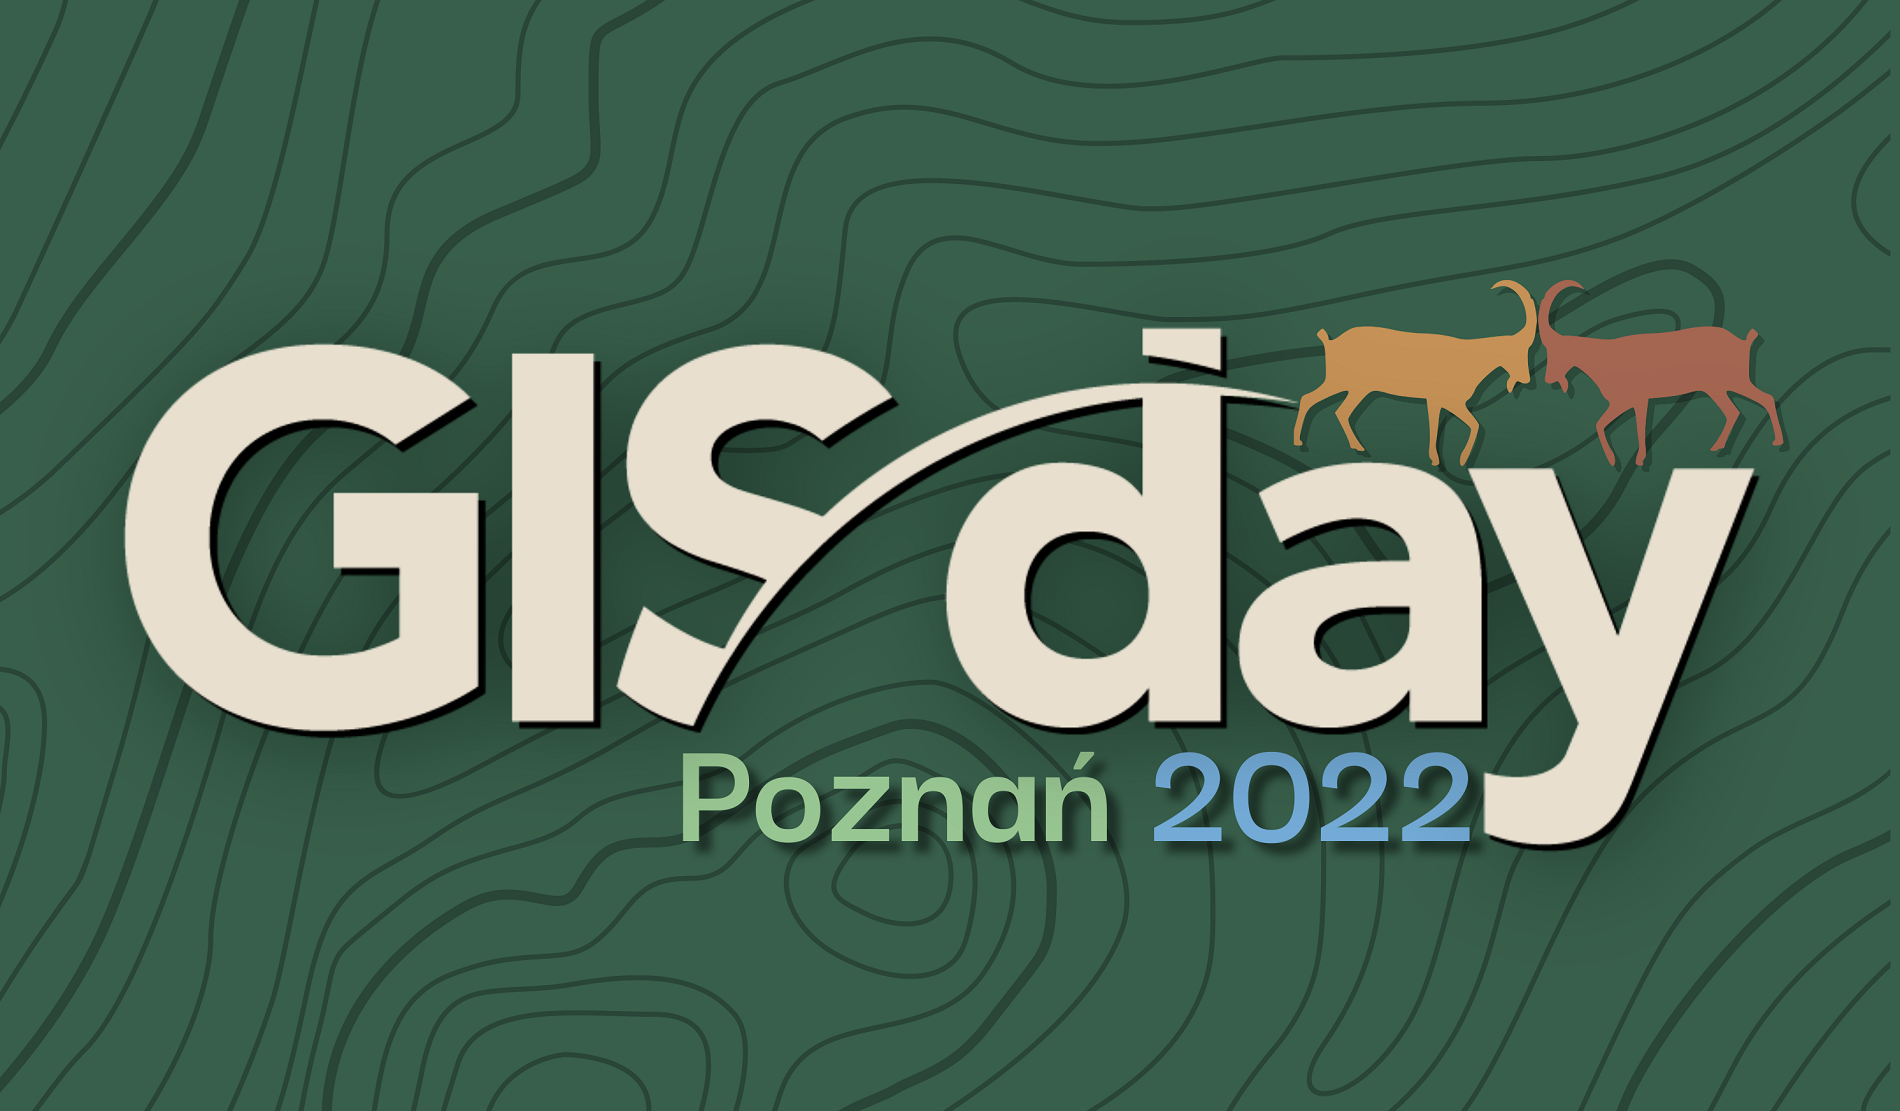 Grafika wydarzenia na zielonym tle przedstawia napis "GIS day" w jasnoszarym kolorze oraz napis "Poznań" w jasnozielonym kolorze i napis 2022 w niebieskim kolorze. Nad napisem "day" znajduje się rysunek dwóch trykających się koziołków, jeden jest w kolorze pomarańczowym, drugi w kolorze brązowym. Na dole grafiki białym kolorem napisana jest data 16 listopada 2022. - grafika artykułu